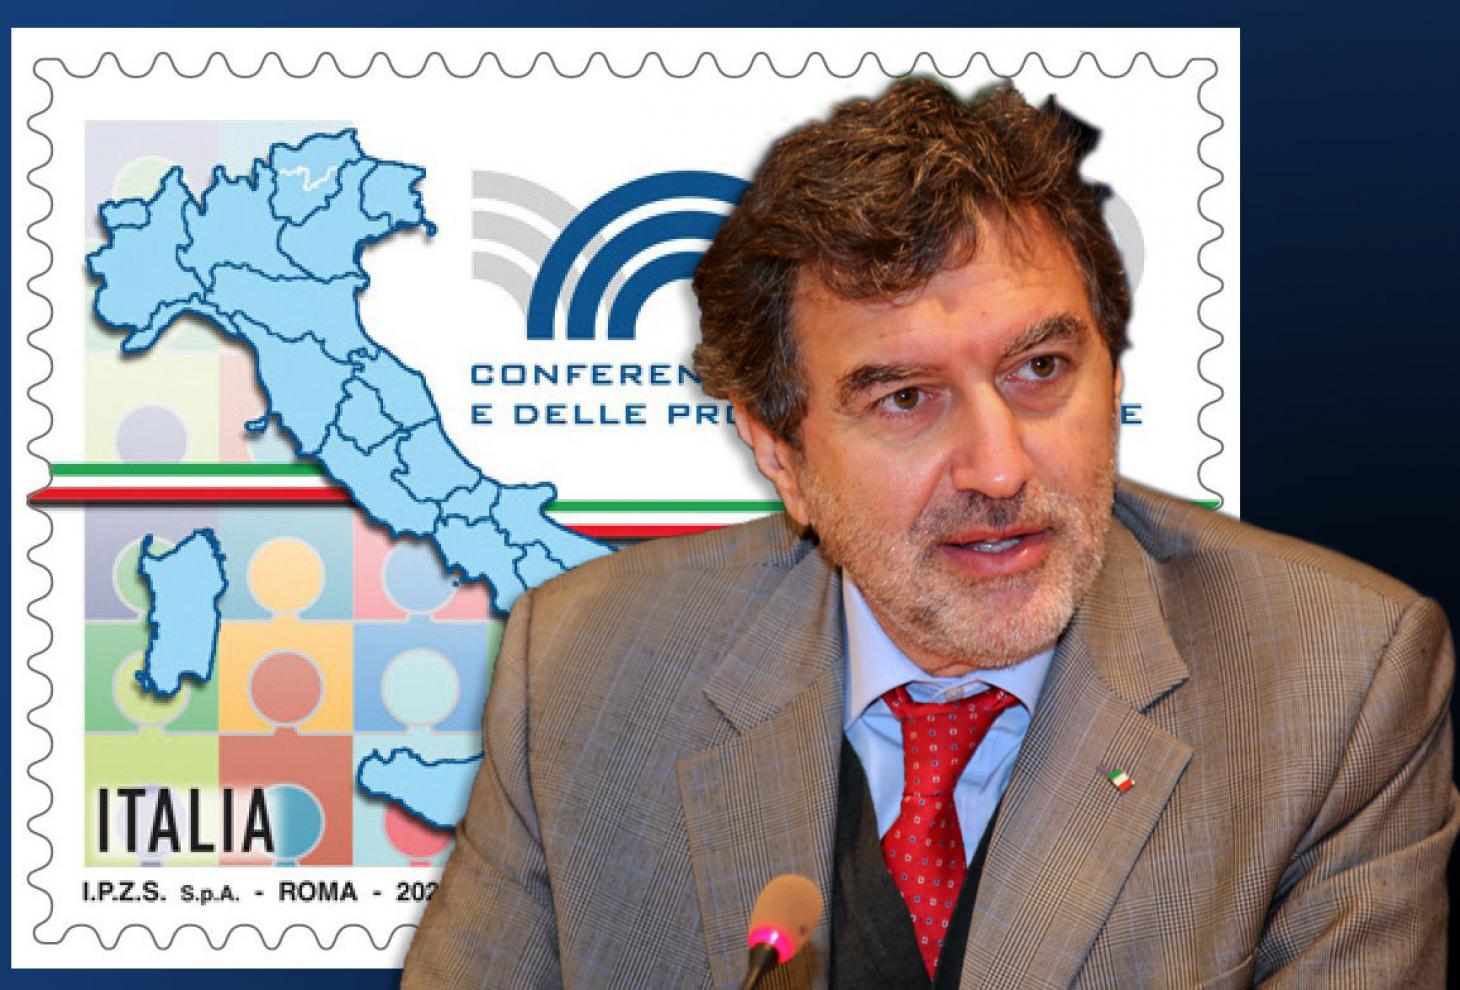 Marco Marsilio e il francobollo commemorativo 